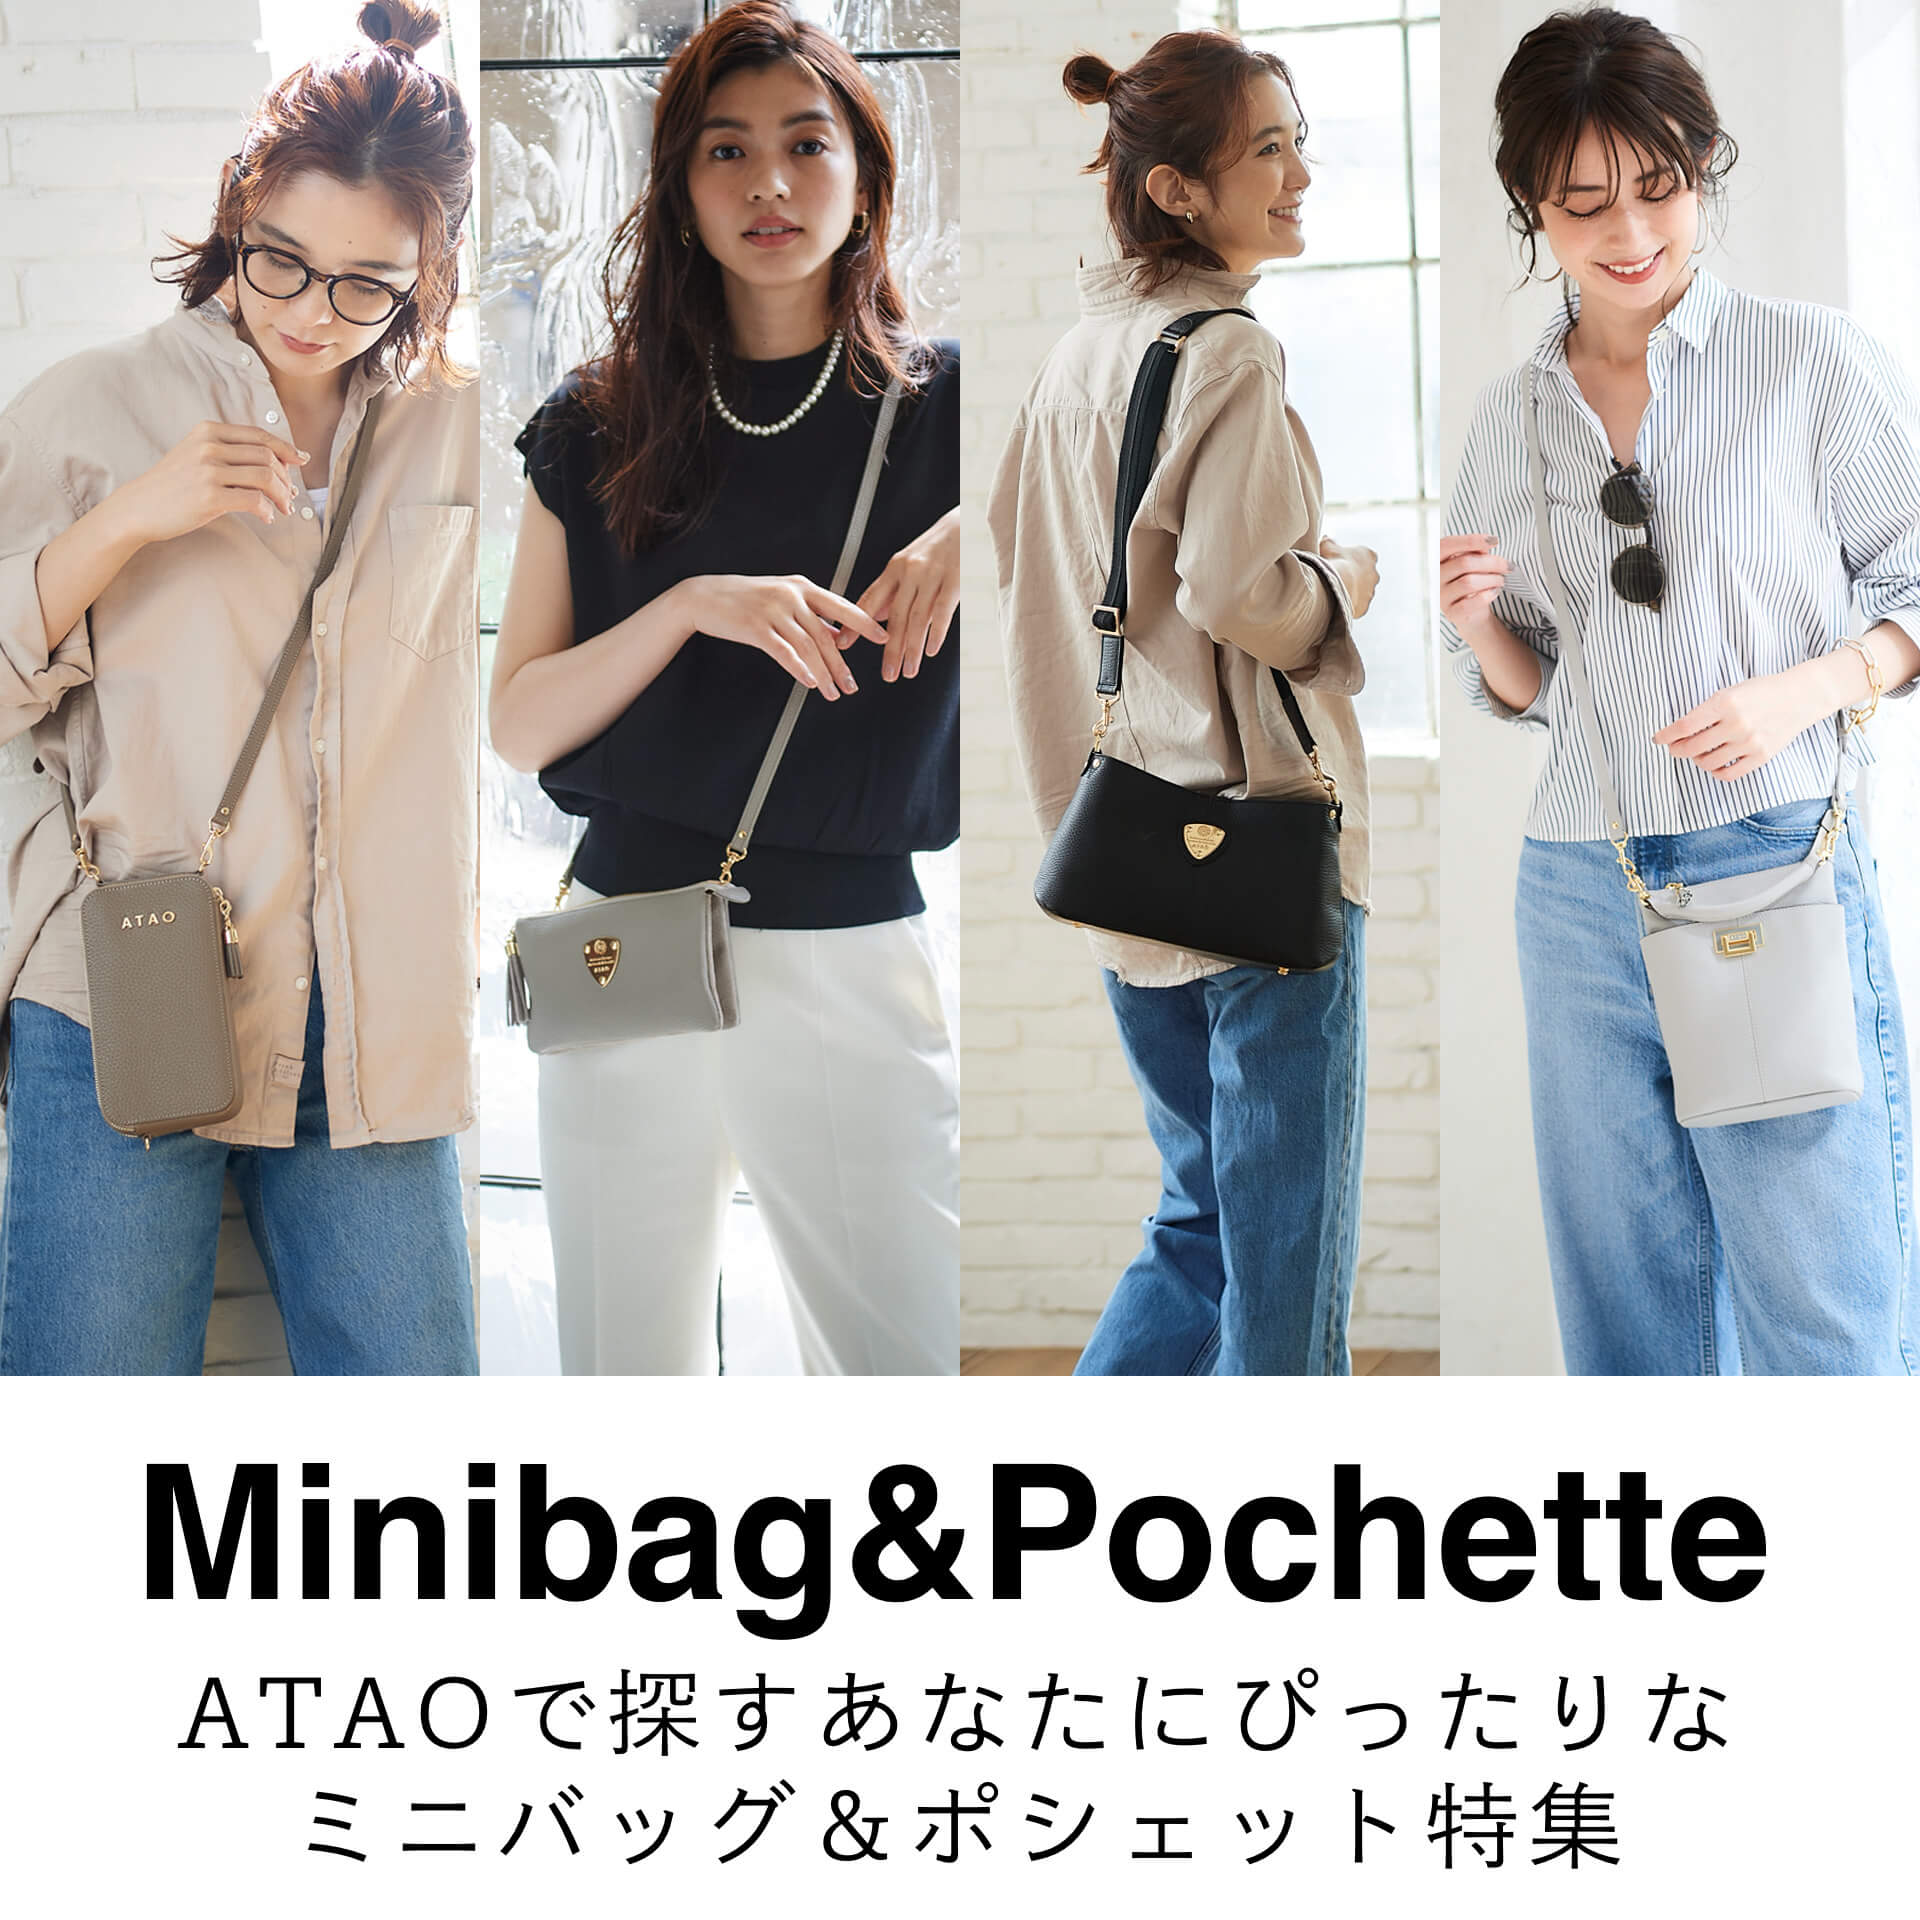 Pochette & minibag